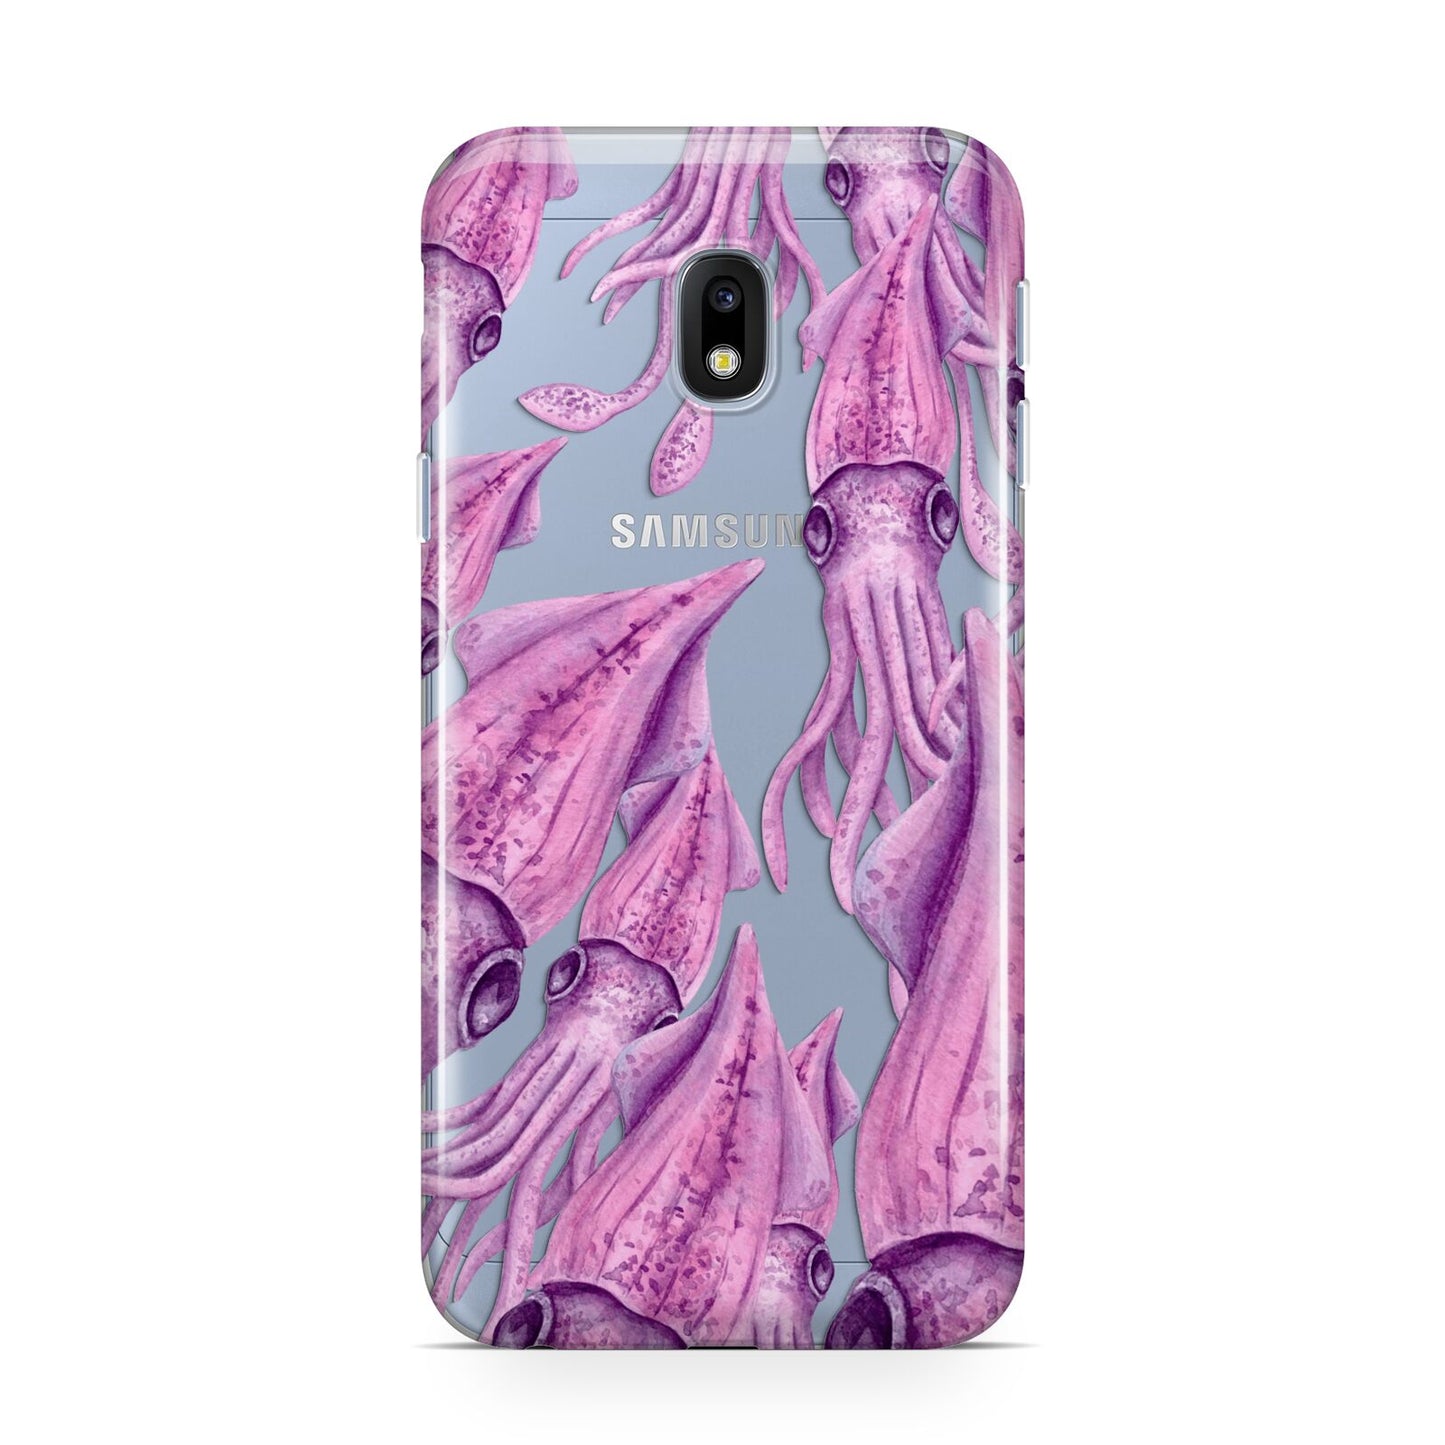 Squid Samsung Galaxy J3 2017 Case